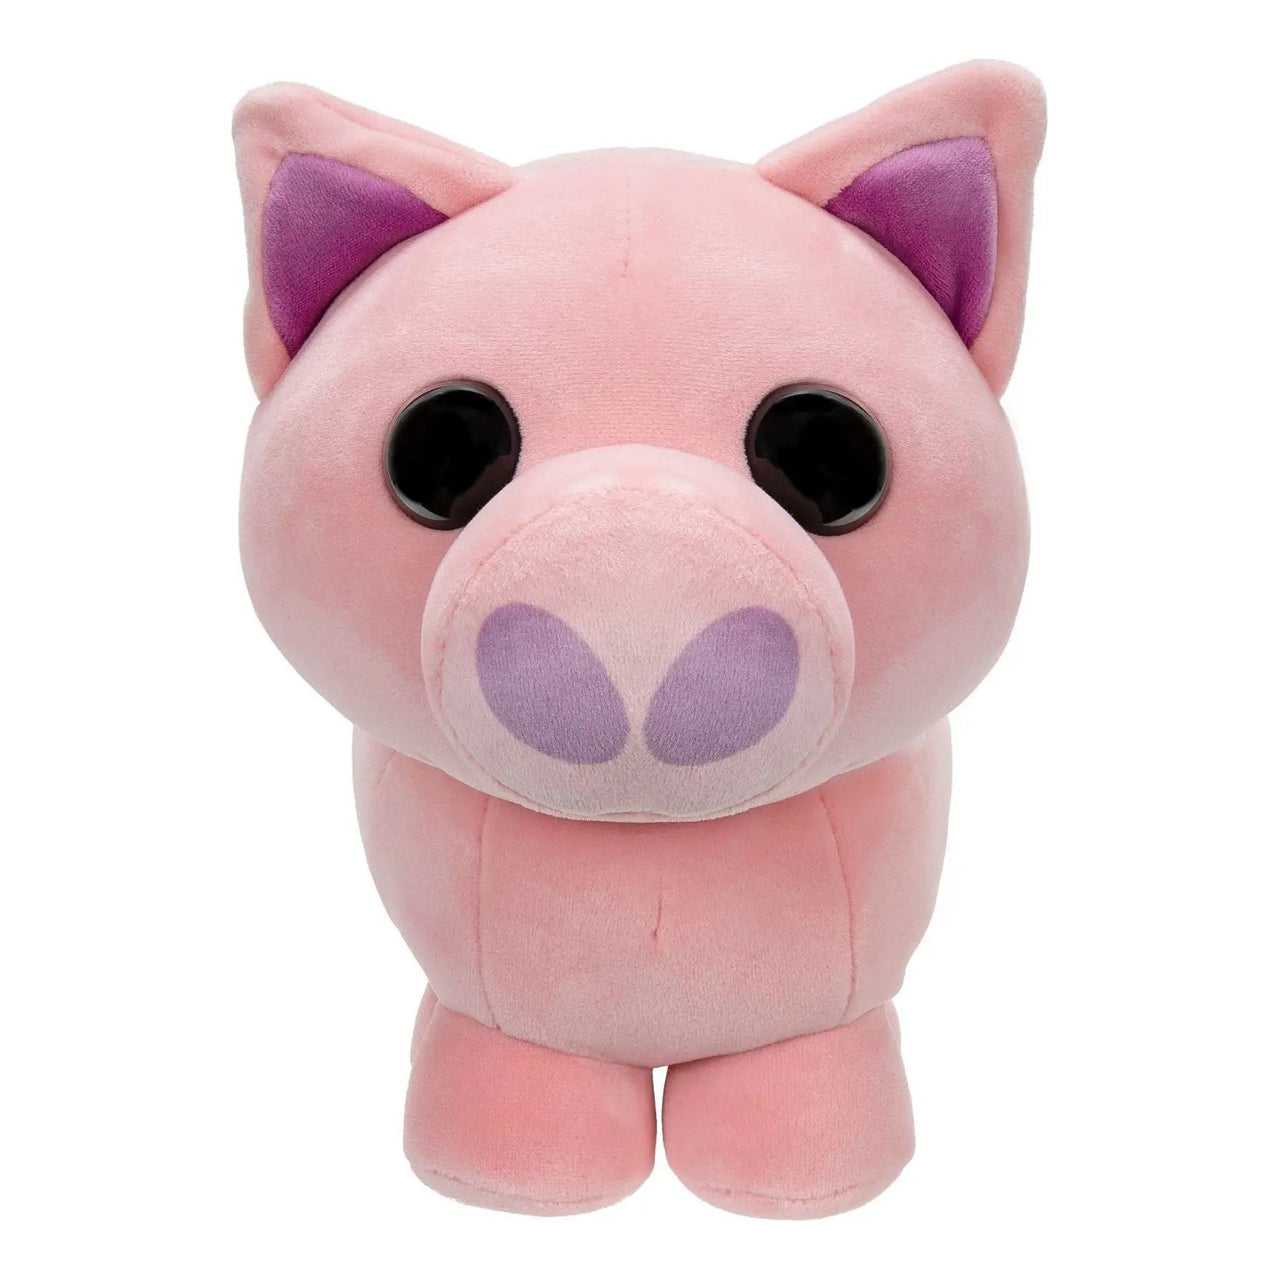 Adopt Me Collector Plush Pig Adopt Me